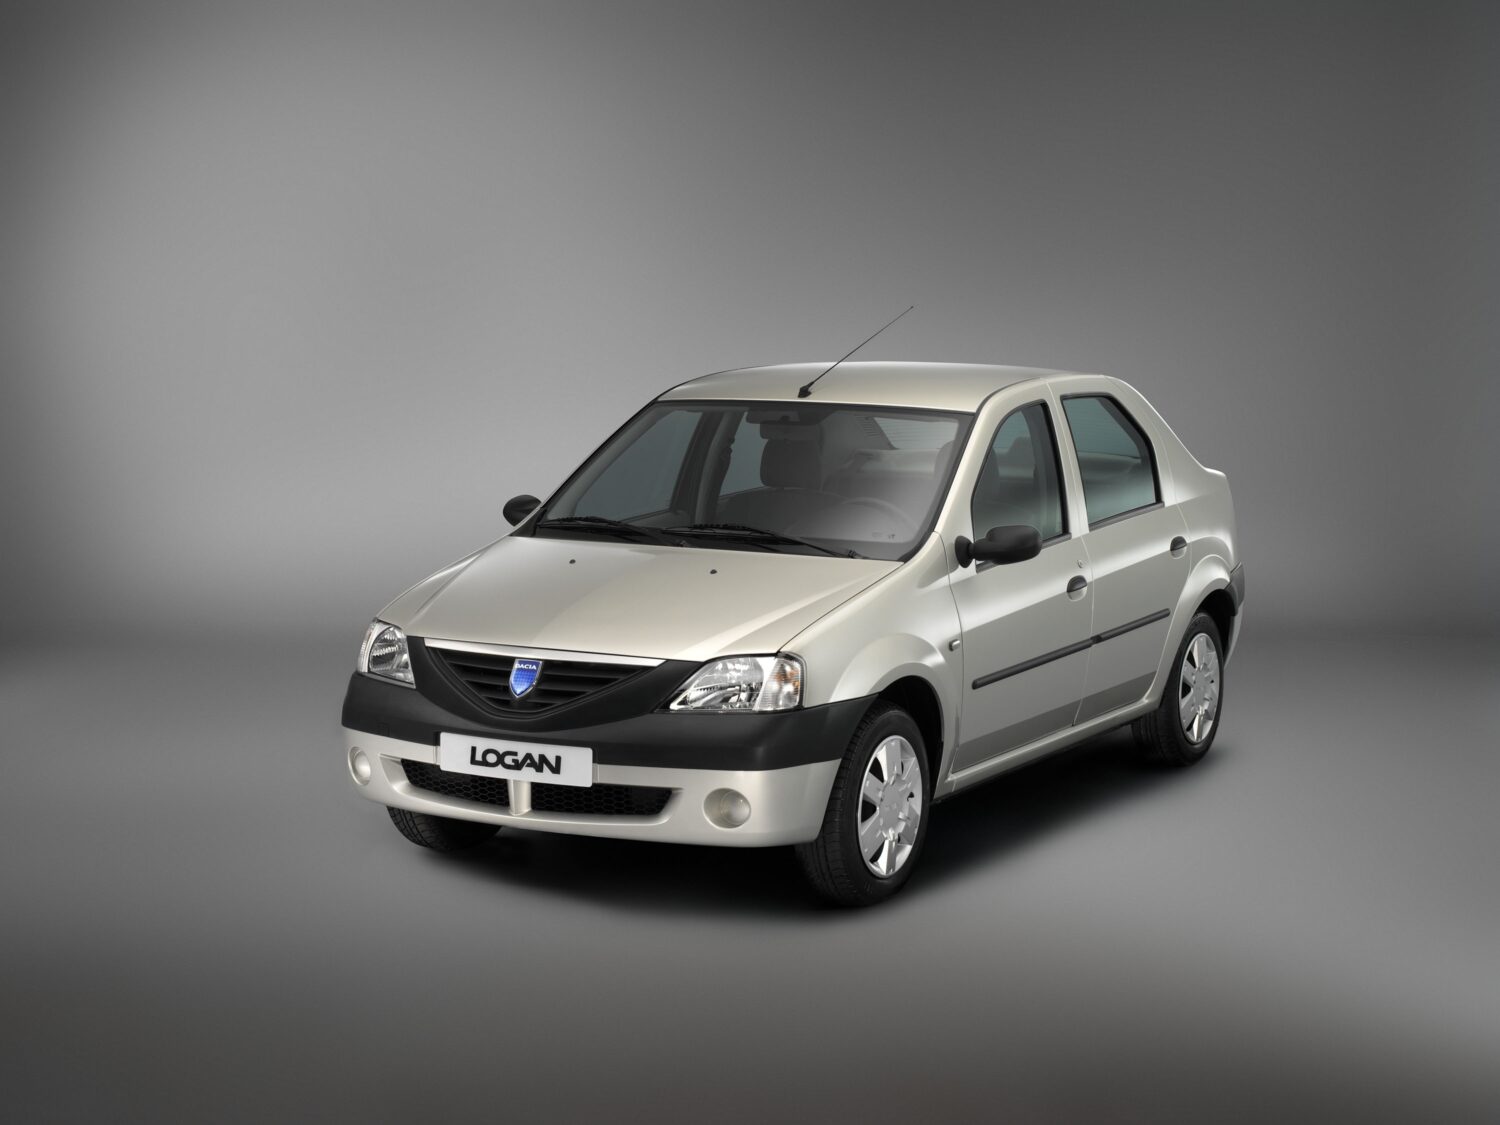 2004 - Dacia LOGAN.jpg